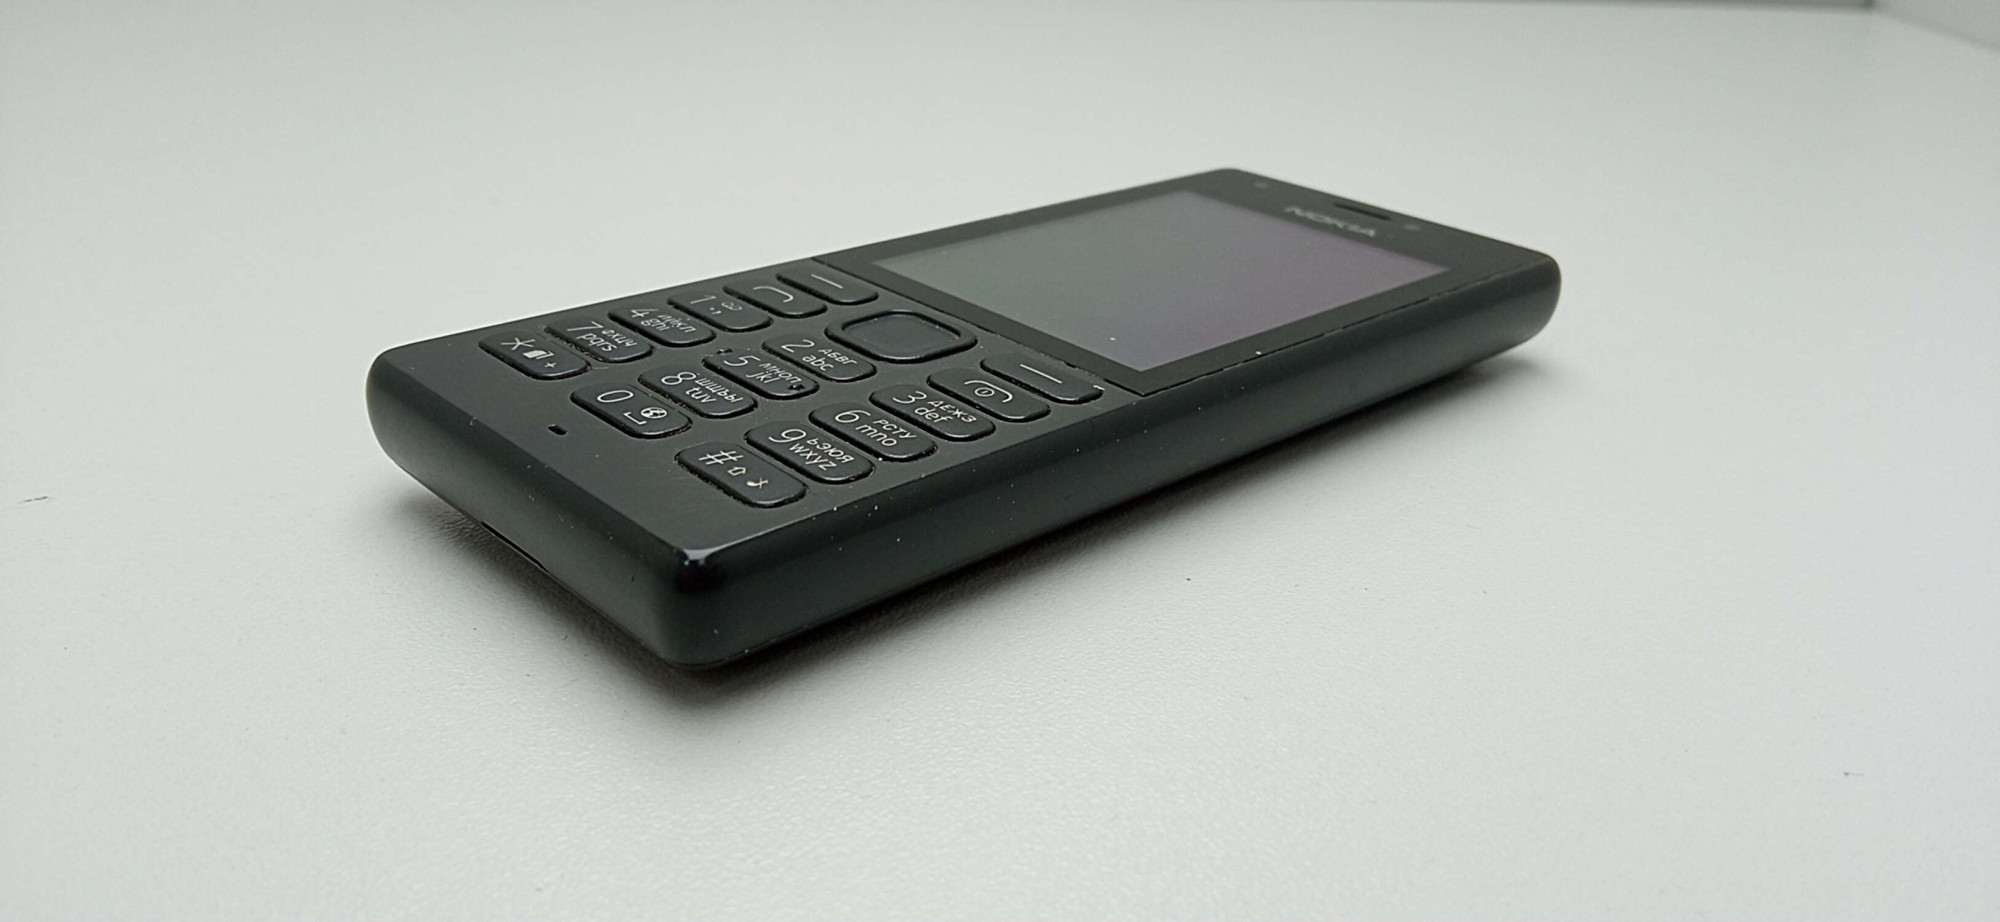 Nokia 216 3